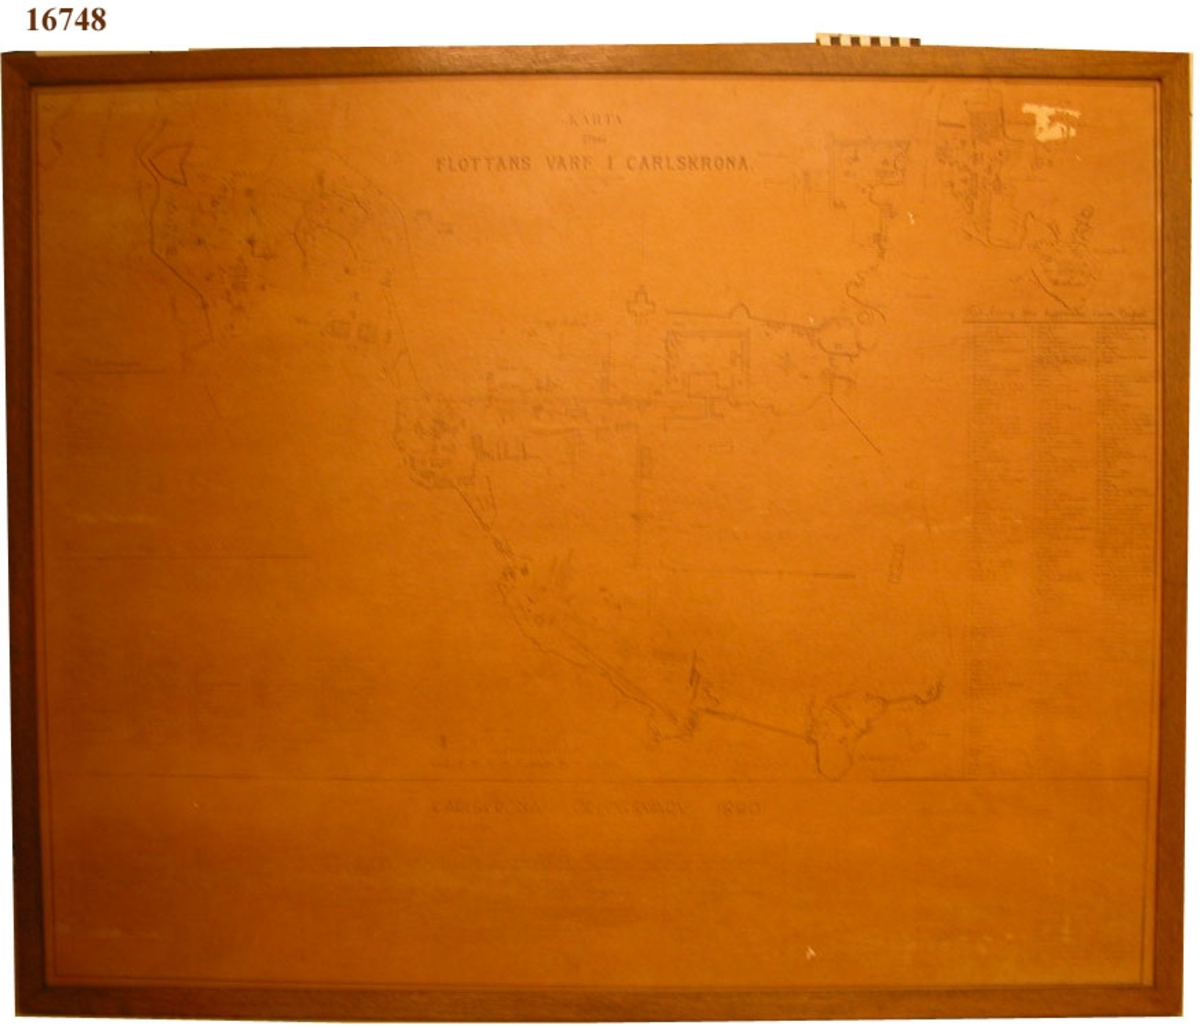 Två tavlor bestående av två masonitskivor i samma storlek, fästade vid varandra med gångjärn på ena kortsidan och med krokar  på andra kortsidan  för att sätta samman dem . båda försedda med träram (29mm). Tavla 1 utgörs av kopierad karta på fernissat papper, klistrad på masonitskivan.  Motivet utgörs av en karta över Karlskronavarvet i skala 1:2000 kopierad efter karta från 1889 kompletterad 1927. Märkt med D 41:4. Förutom kartbild finns förteckning över byggnader inom varvet och i staden.
Nederst följer uppgifter om byggnader från karta upprättad 1820 och 1927 samt markeringar för projekterade byggnader.
Tavla 2 utgörs av masonitskiva som på framsidan är målad med grön färg avseds som skrivtavla med kritor.
Jämför MM 16747